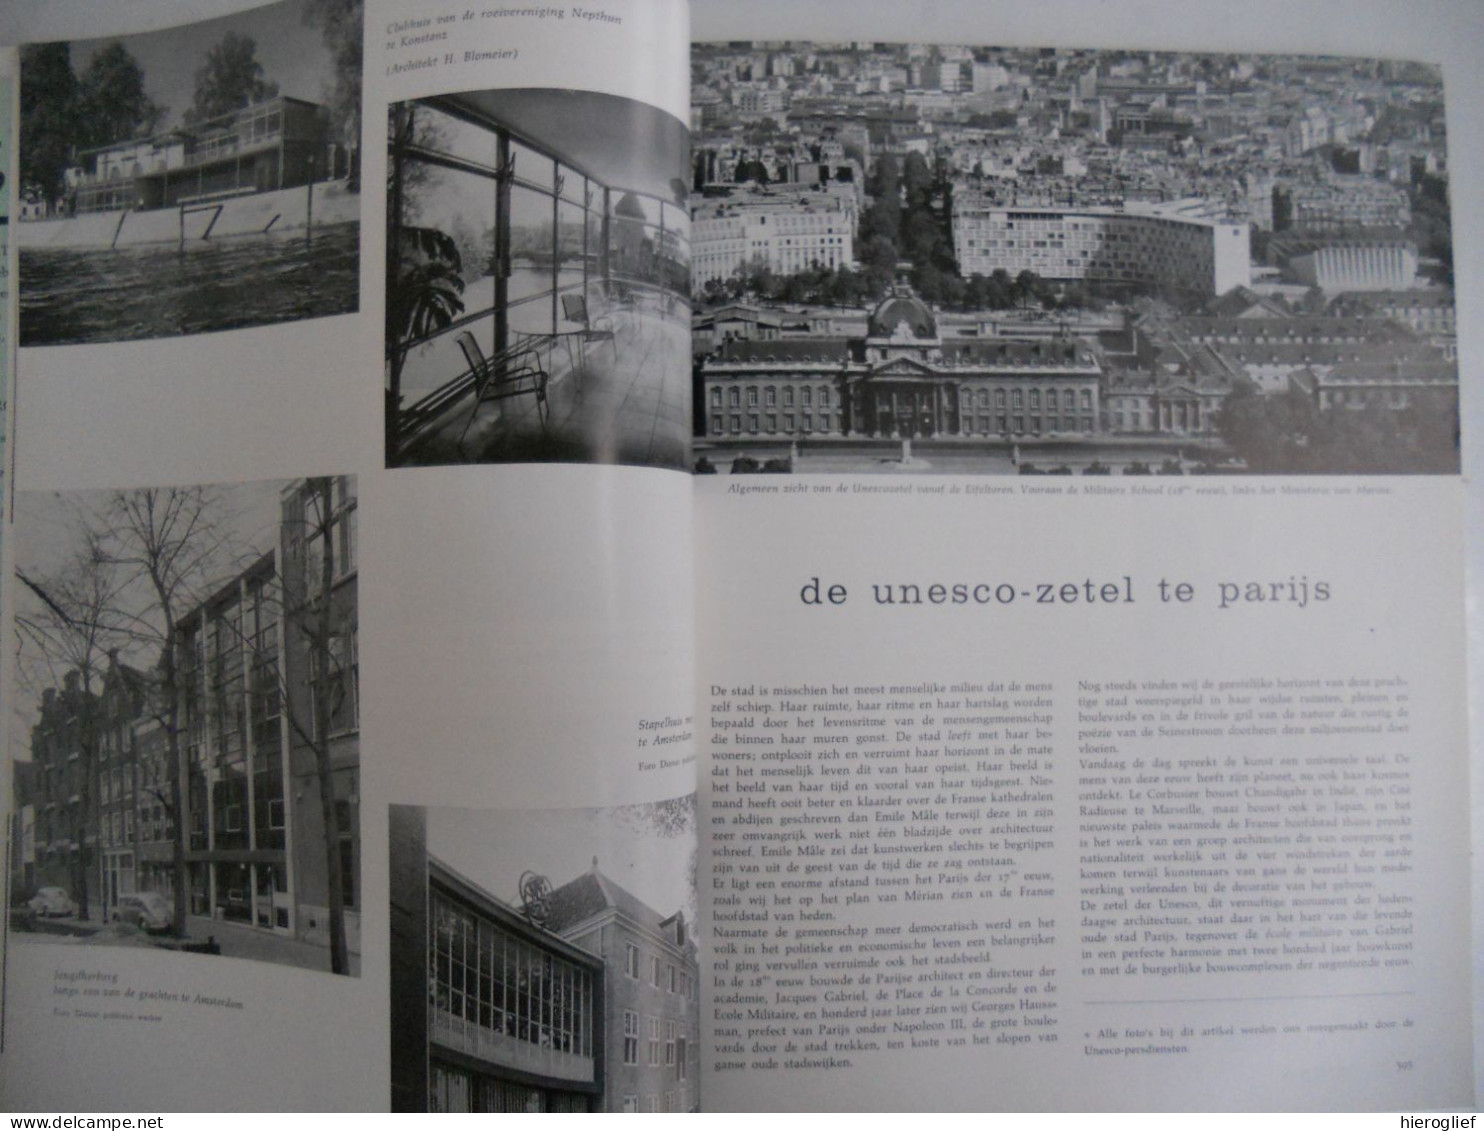 nieuwbouw ih oude Brugge / kanunnik Joseph Dochy / unesco gebouw Parijs - tijdschrift WEST-VLAANDEREN nr 48